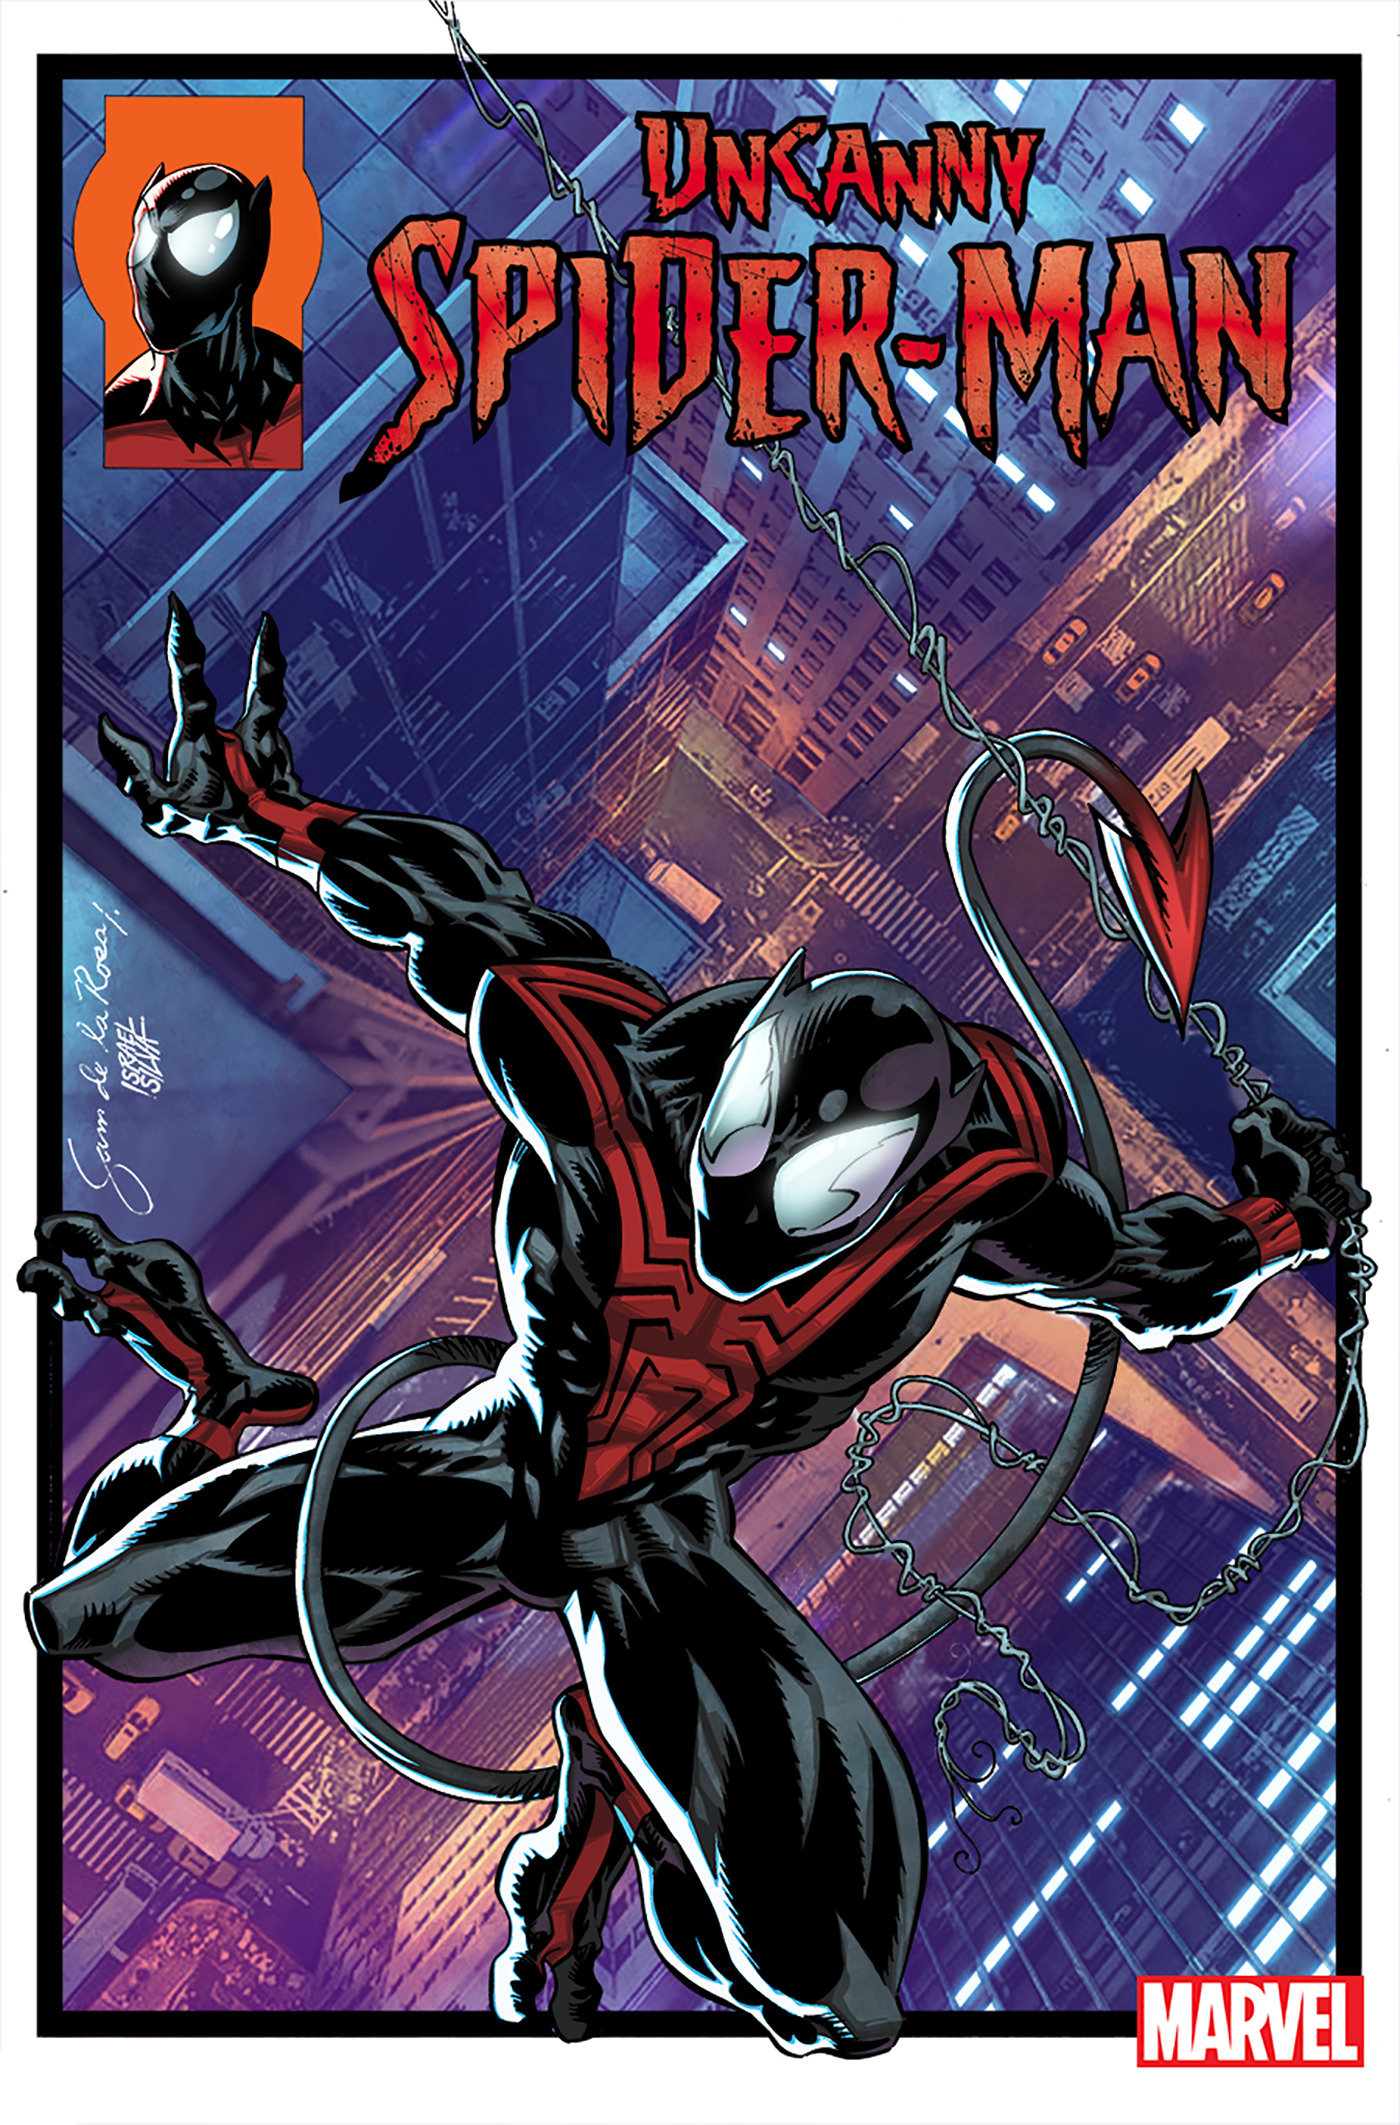 Uncanny Spider-Man #1 Sam De La Rosa 1 for 25 Incentive (Fall of the X-Men)